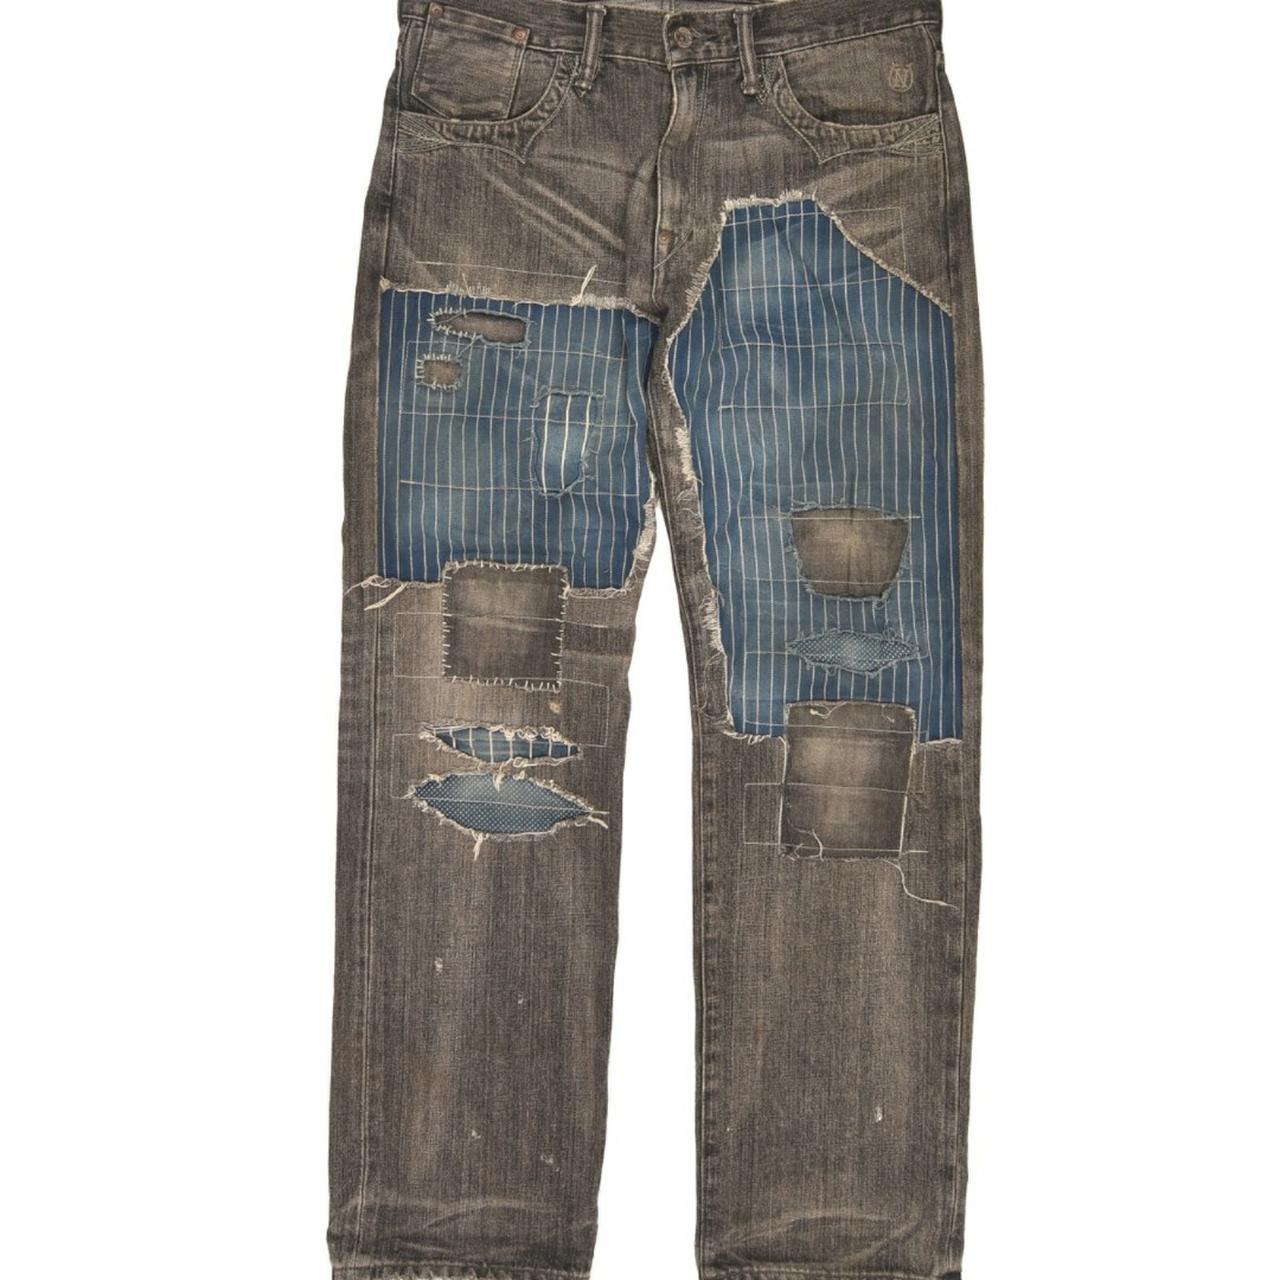 neighborhood (miner savage) boro denim jeans pants,... - Depop